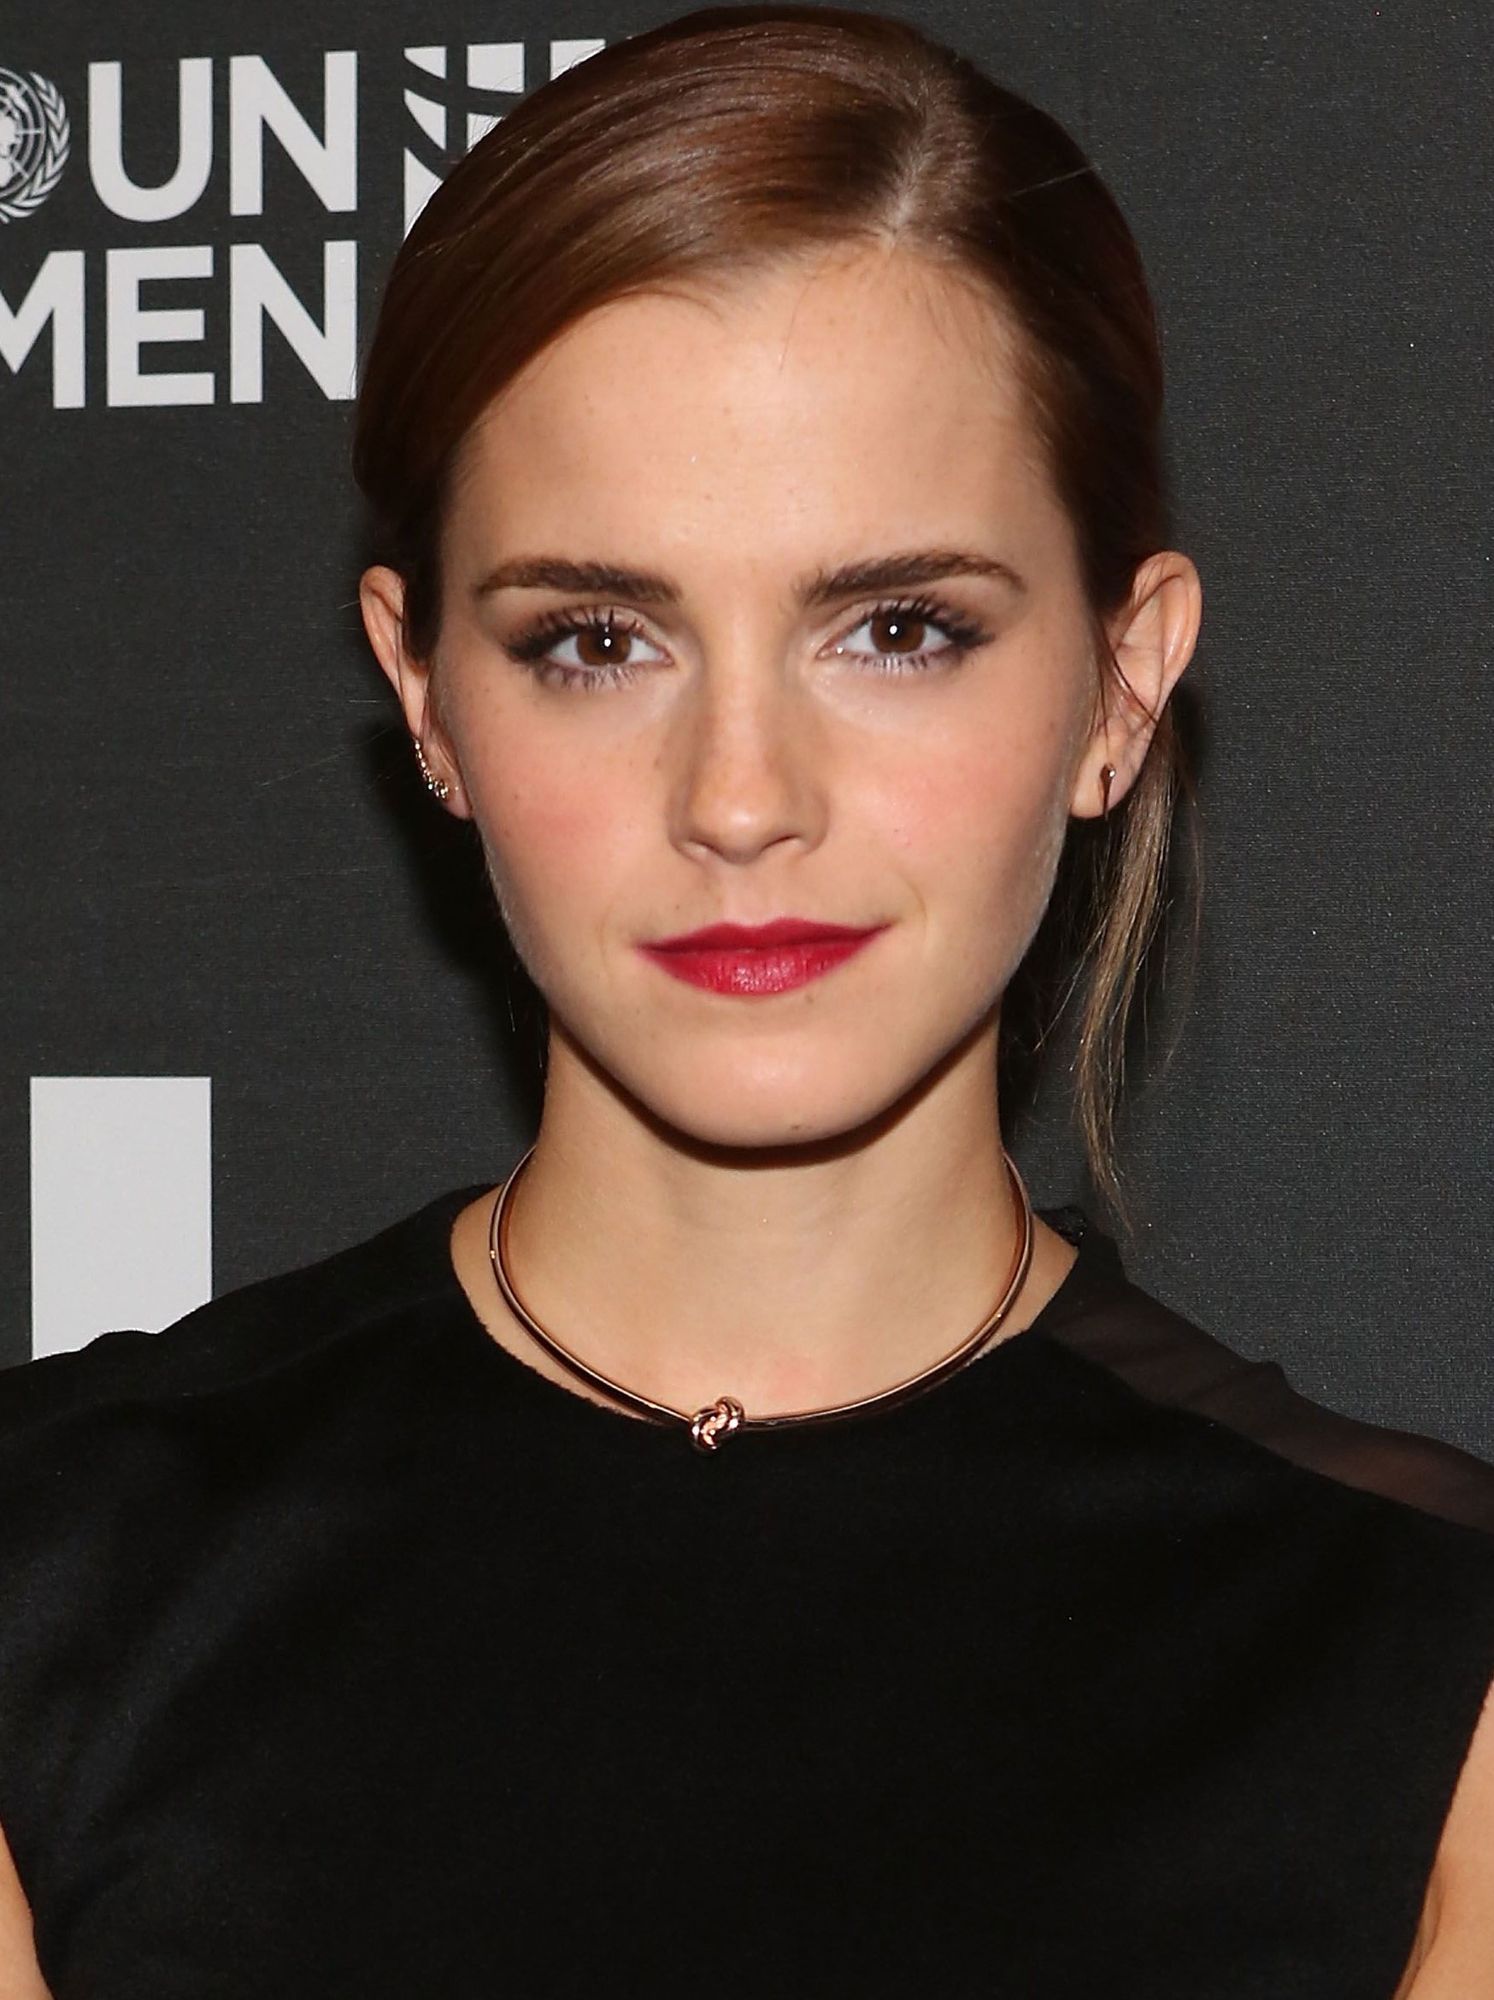 Emma Watson - Age, Movies & Life